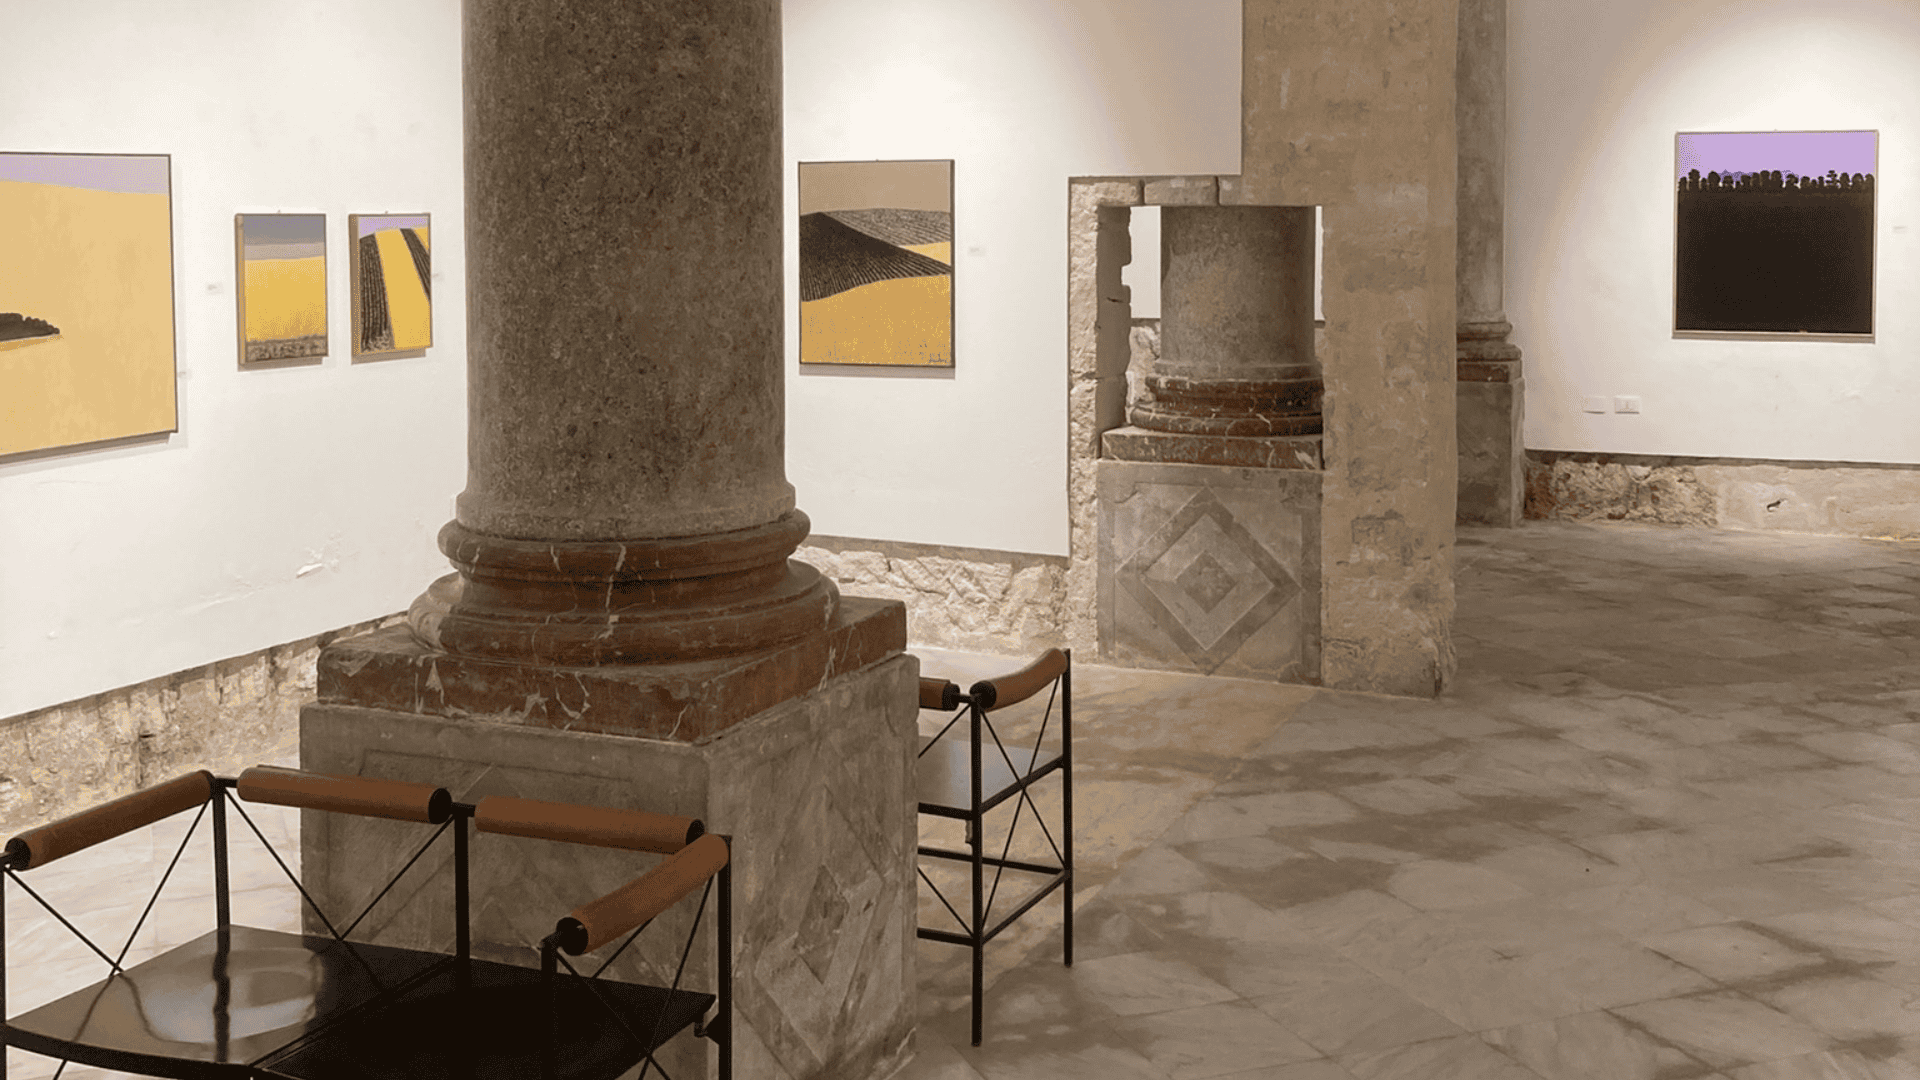 Interno del Museo San Rocco a Trapani, mostrando i basamenti delle colonne dell'antica chiesa nella sala espositiva al piano terra